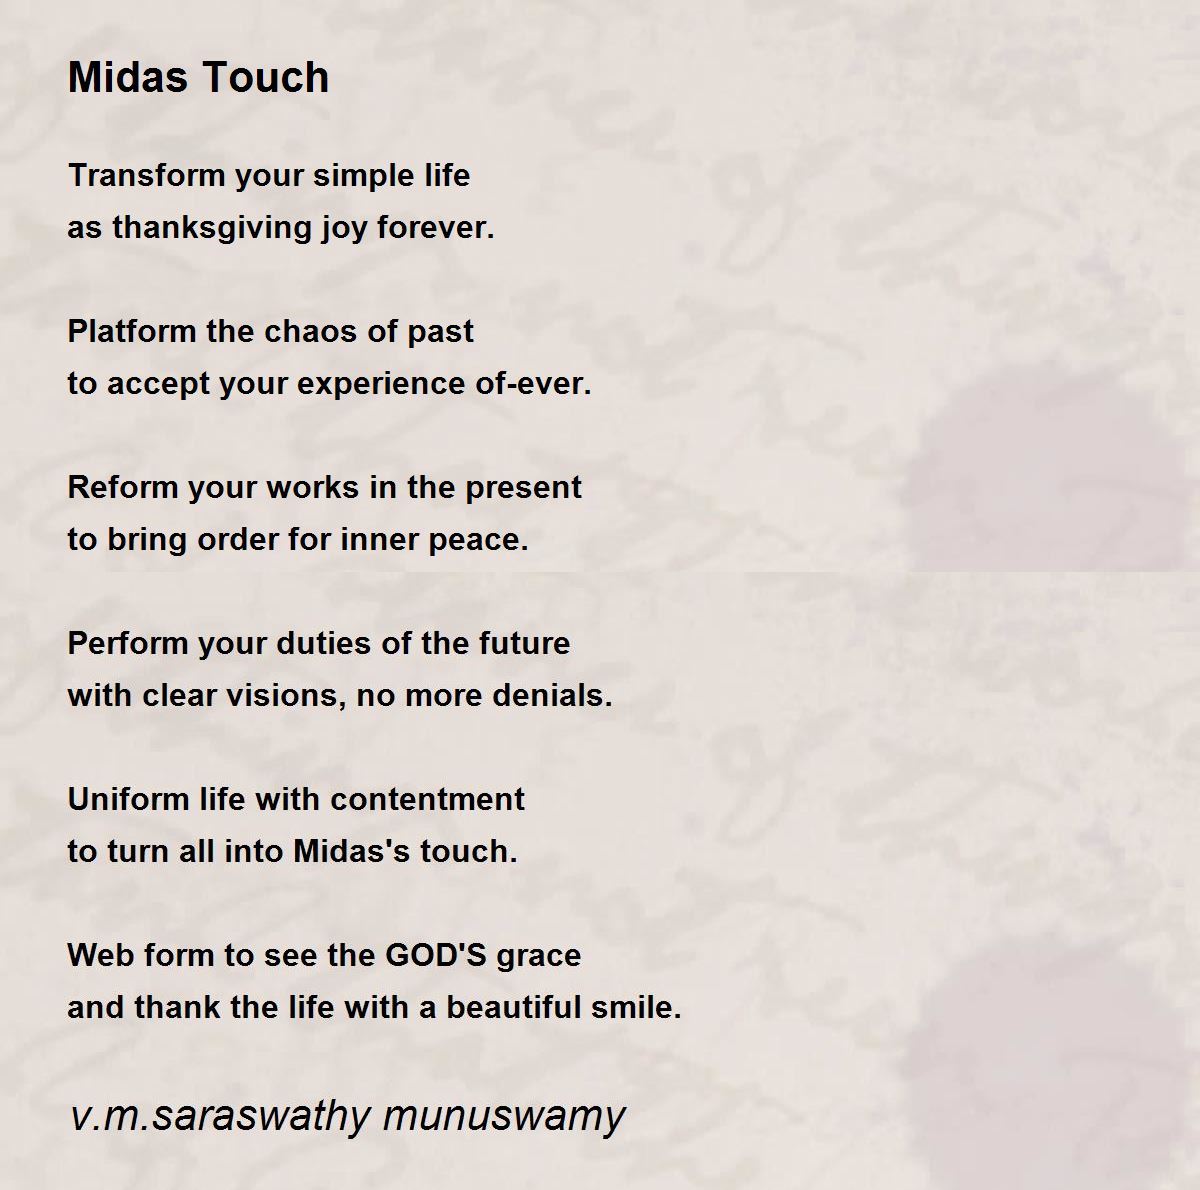 Midas Touch - Midas Touch Poem by v.m.saraswathy munuswamy